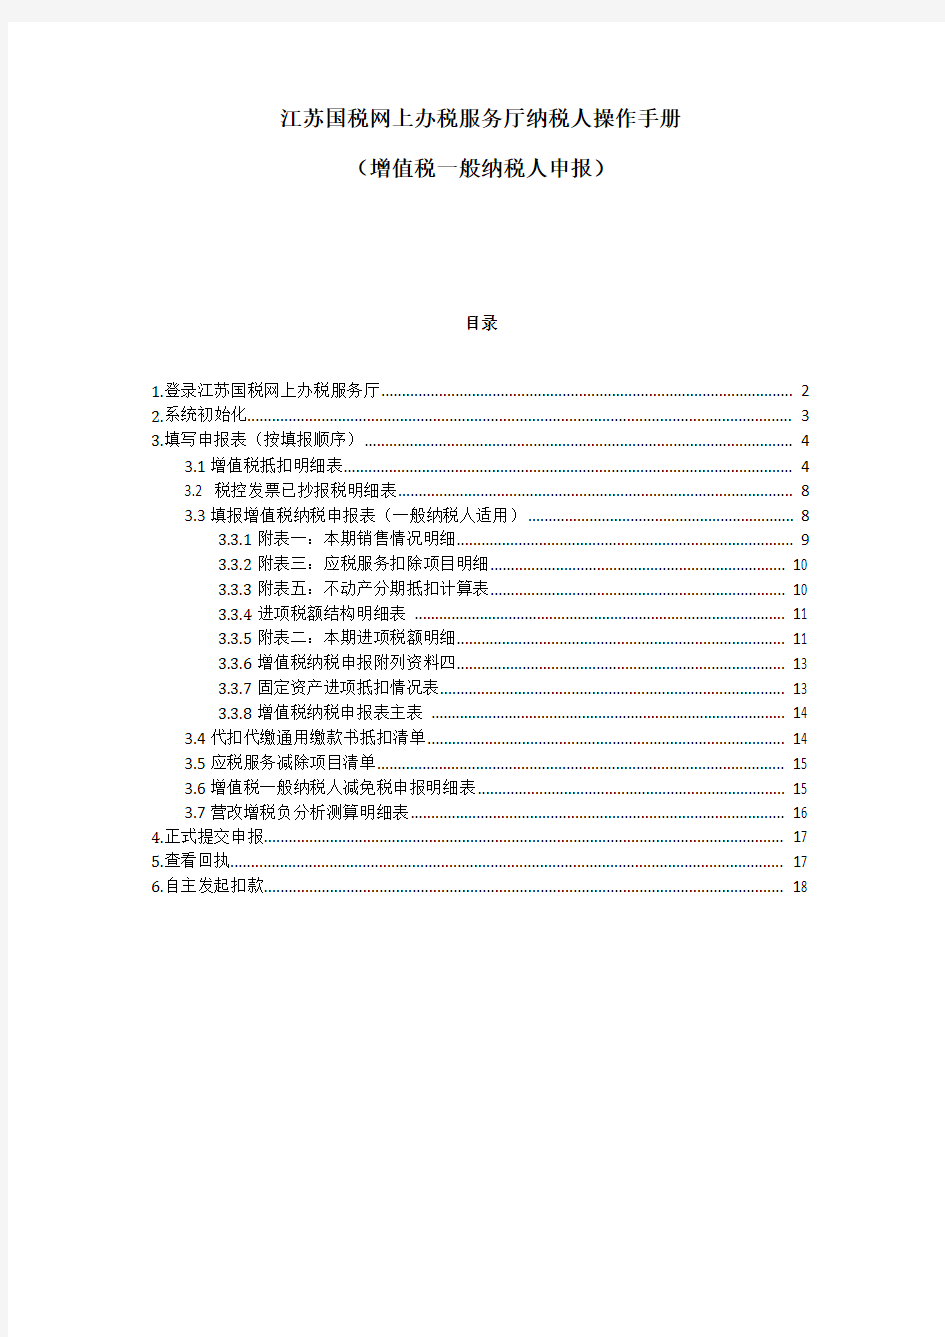 江苏国税金税三期网上办税服务厅办税人操作手册